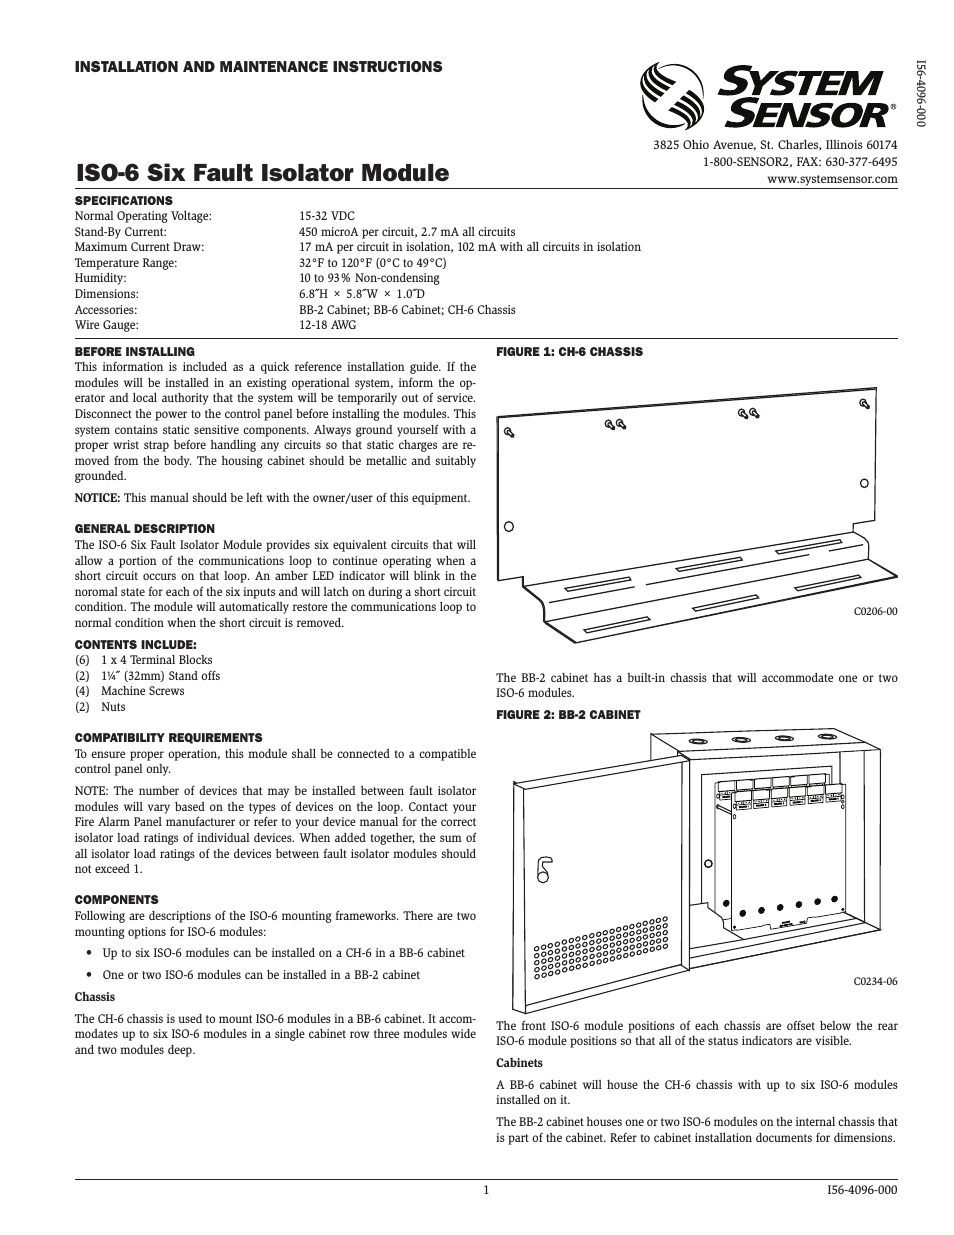 ISO-6 - Six Fault Isolator Module